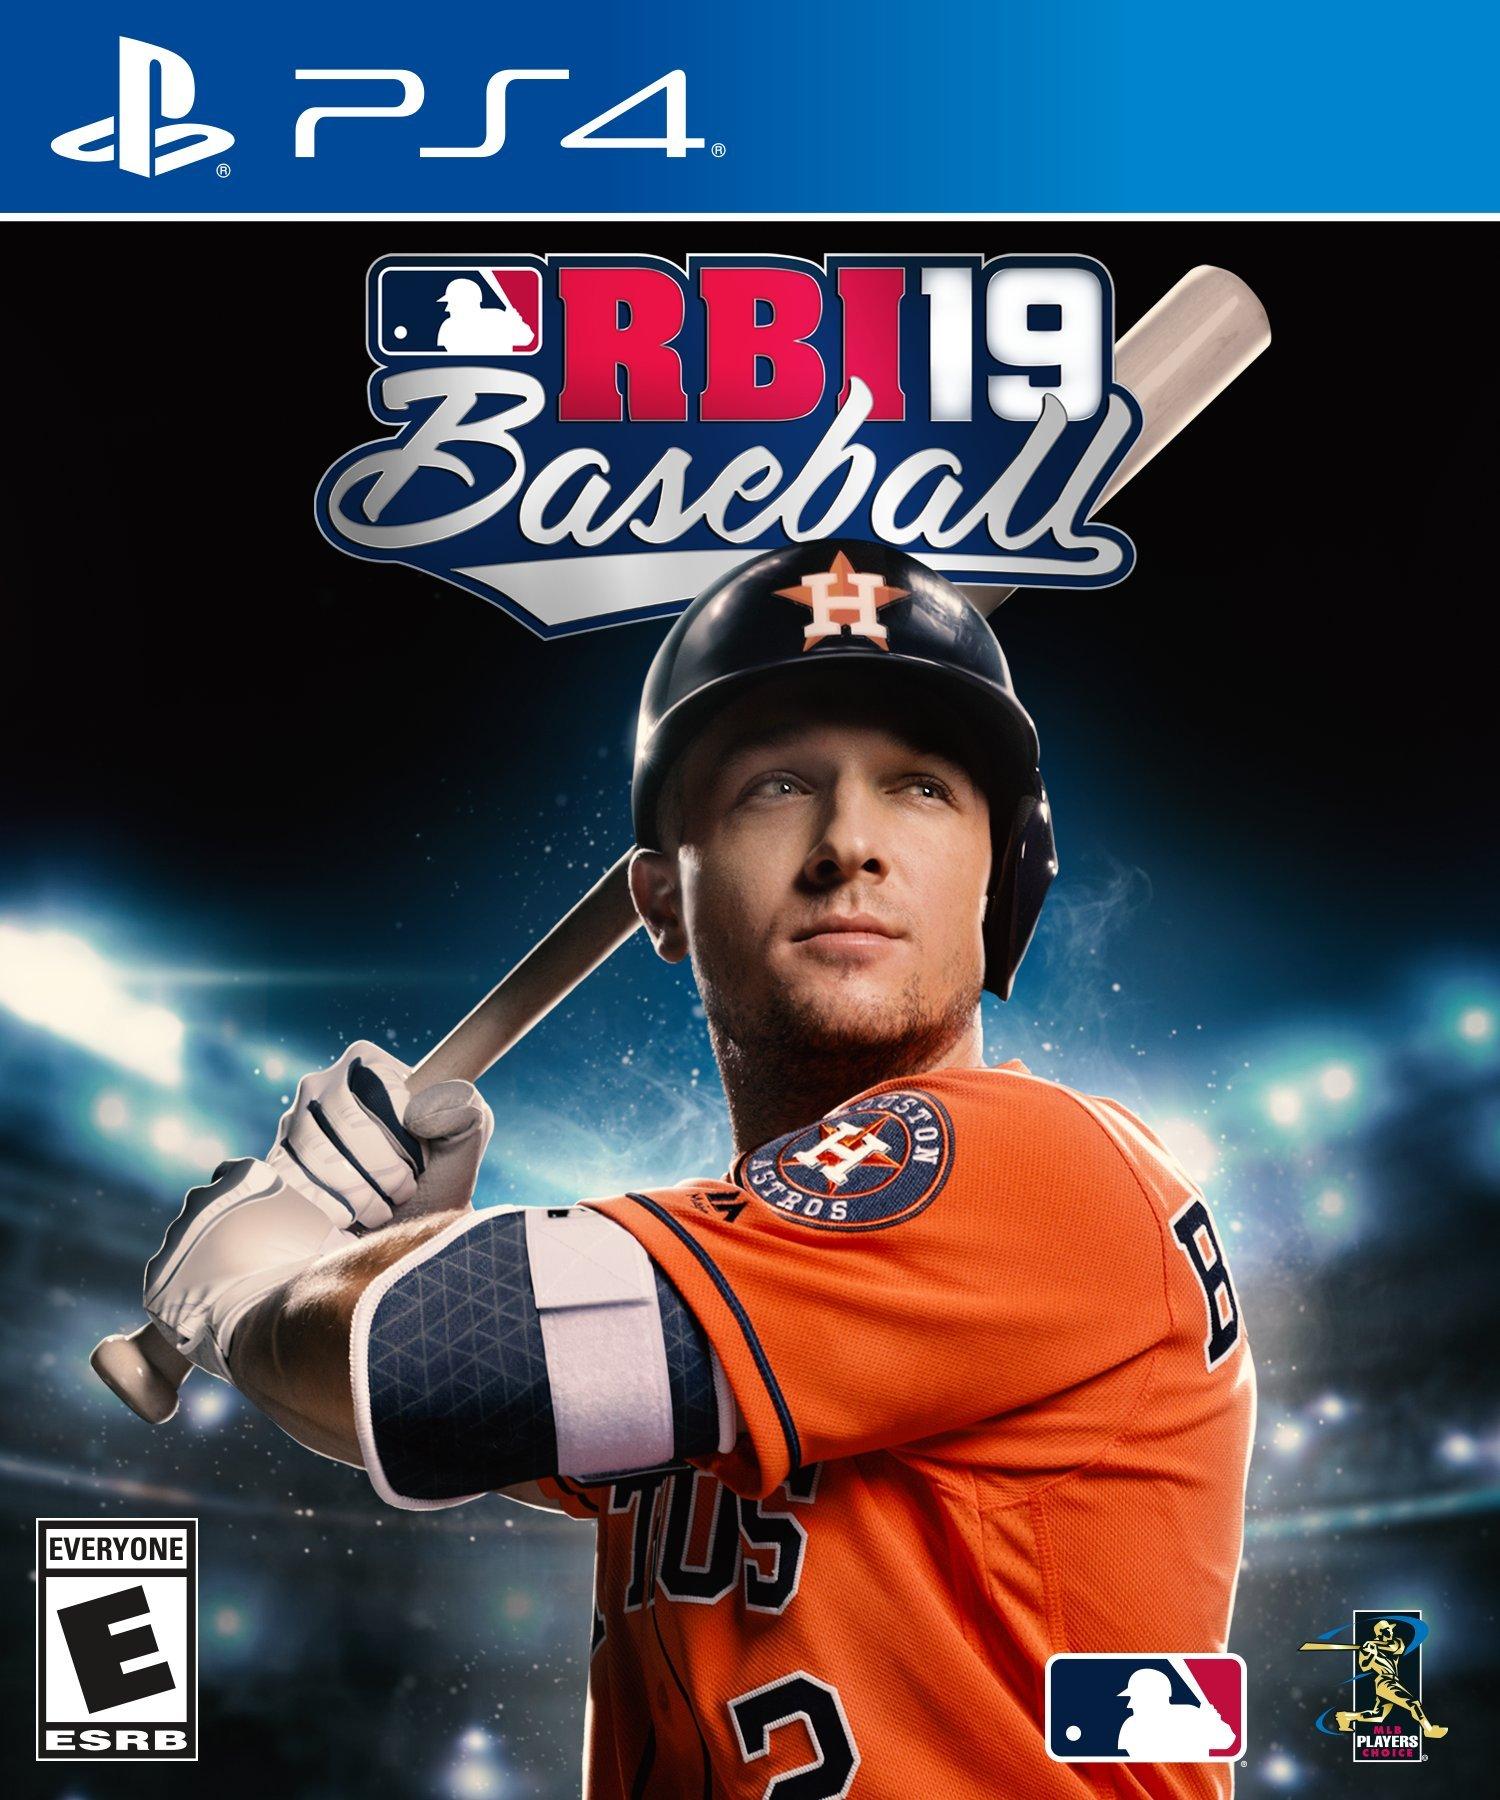 RBI Baseball 19